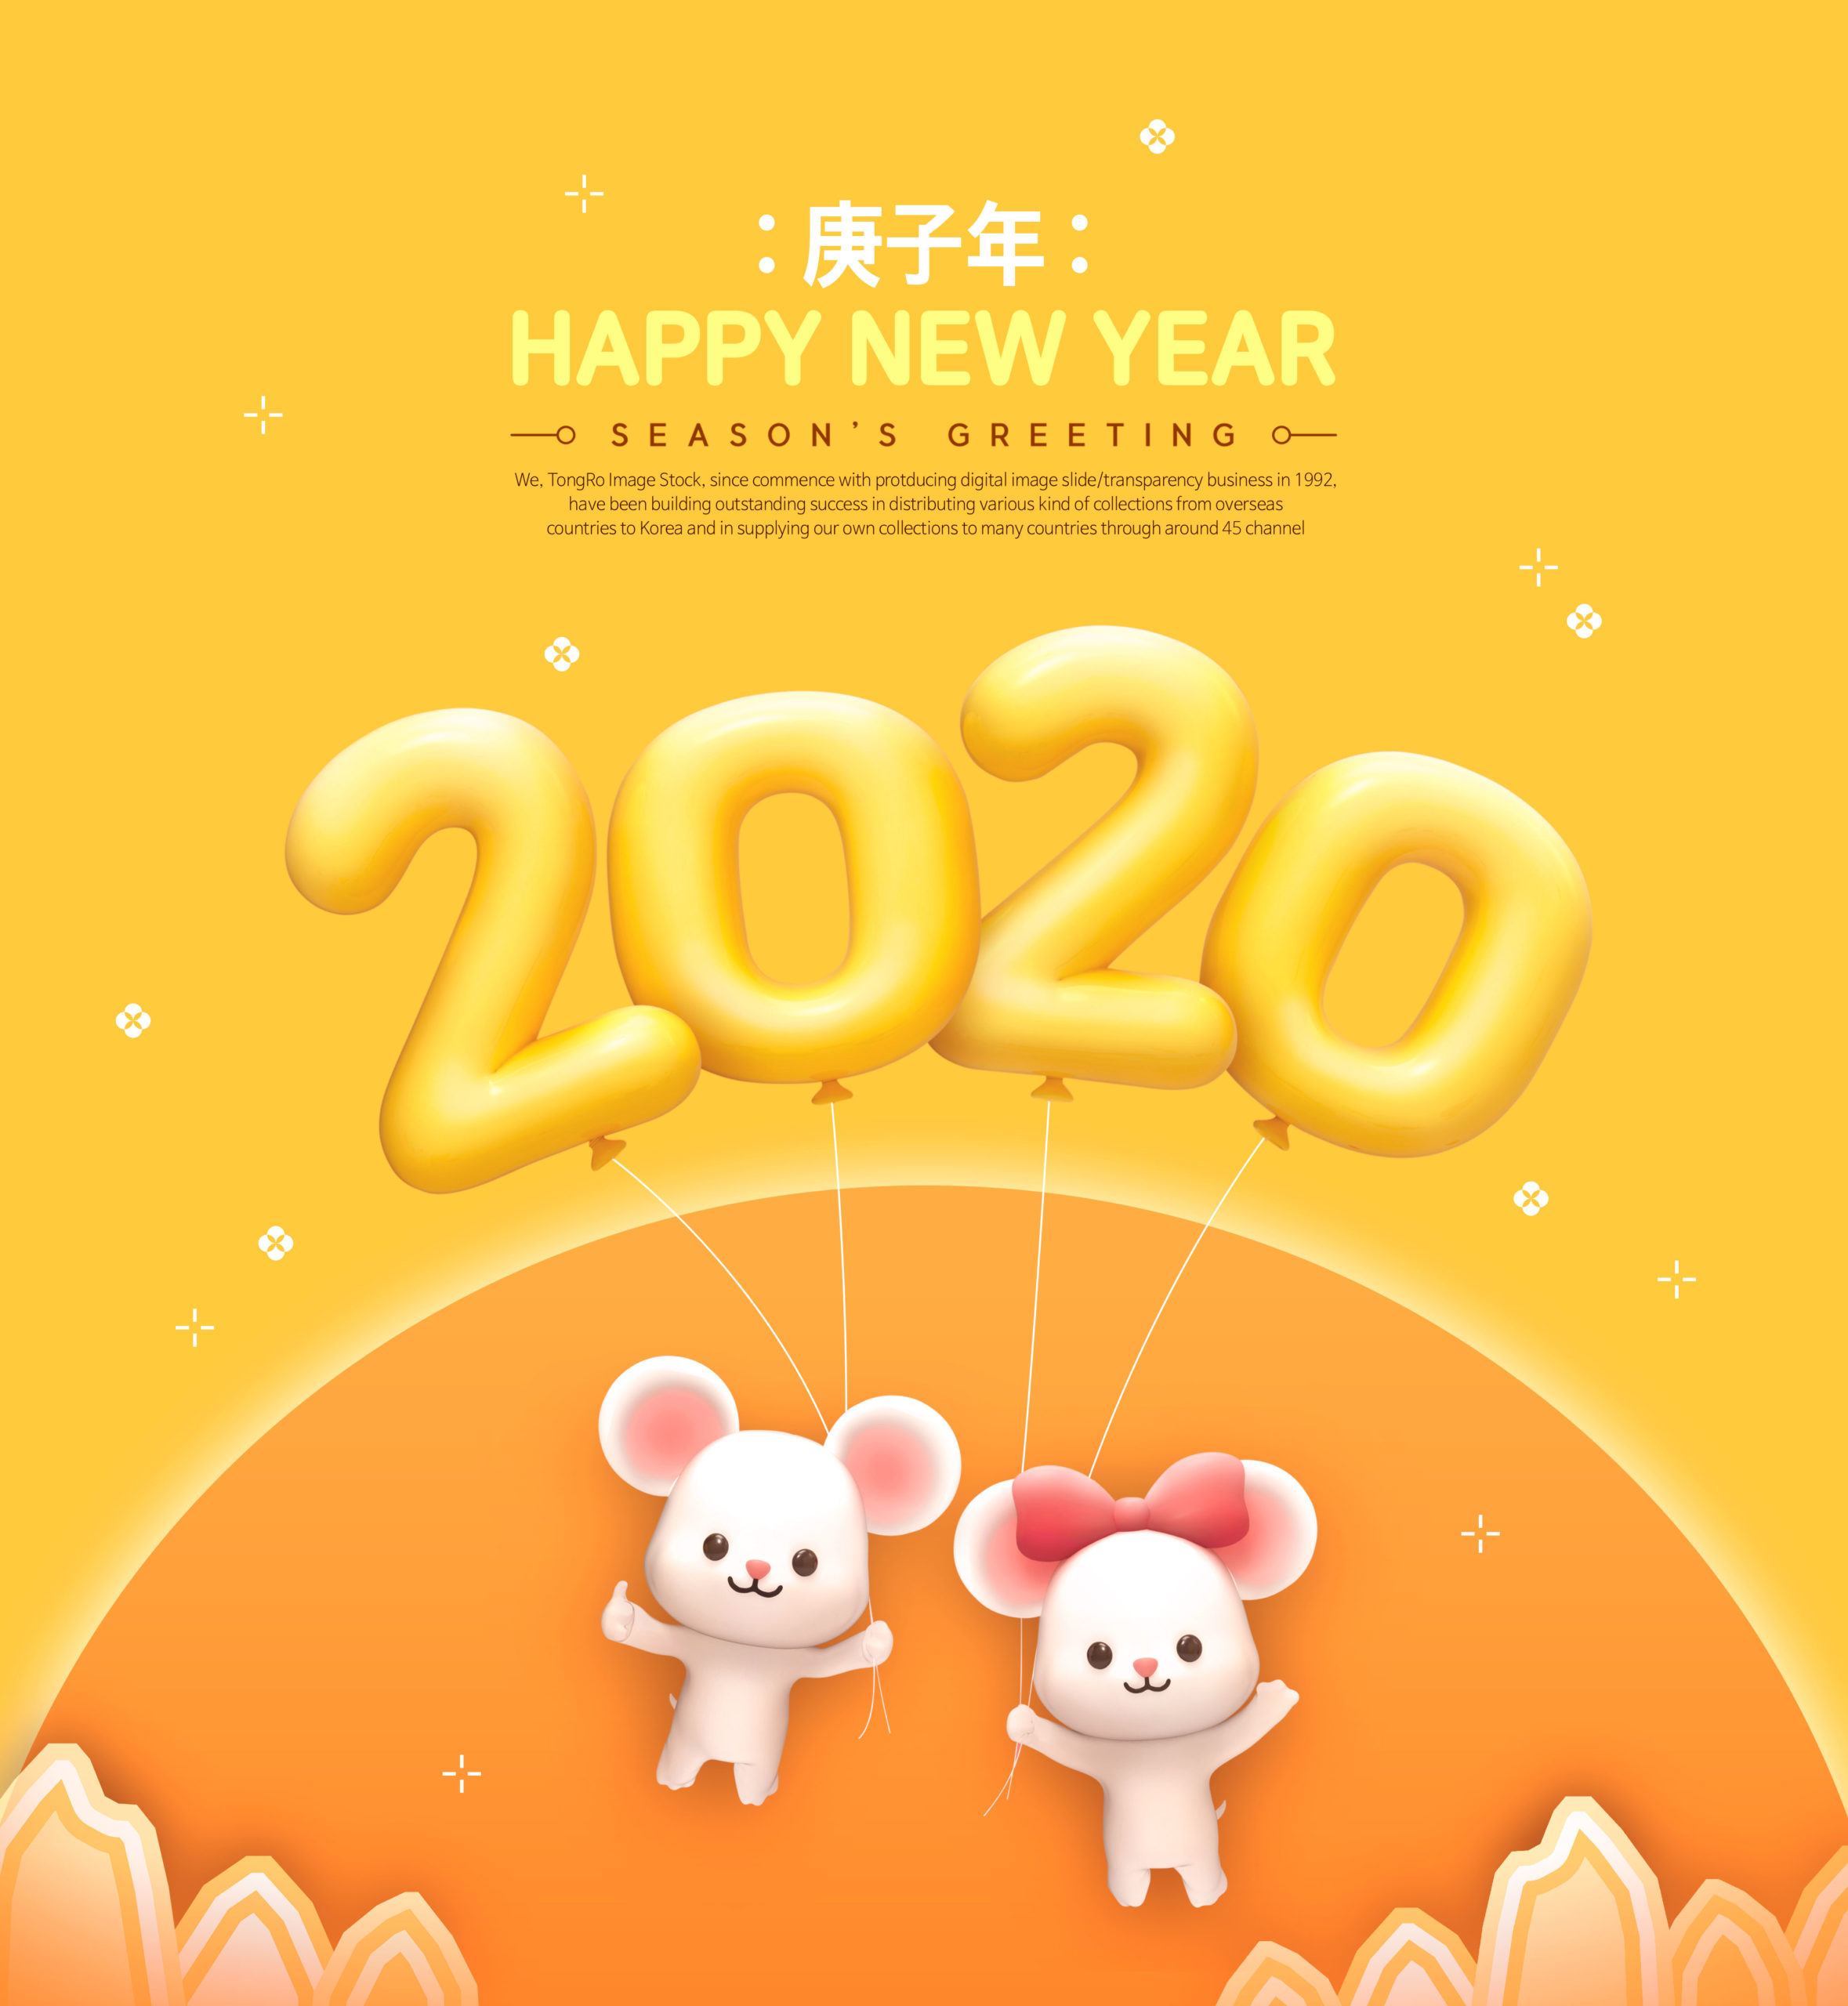 可爱小老鼠2020鼠年/庚子年/新年快乐主题海报模板[PSD]插图(1)